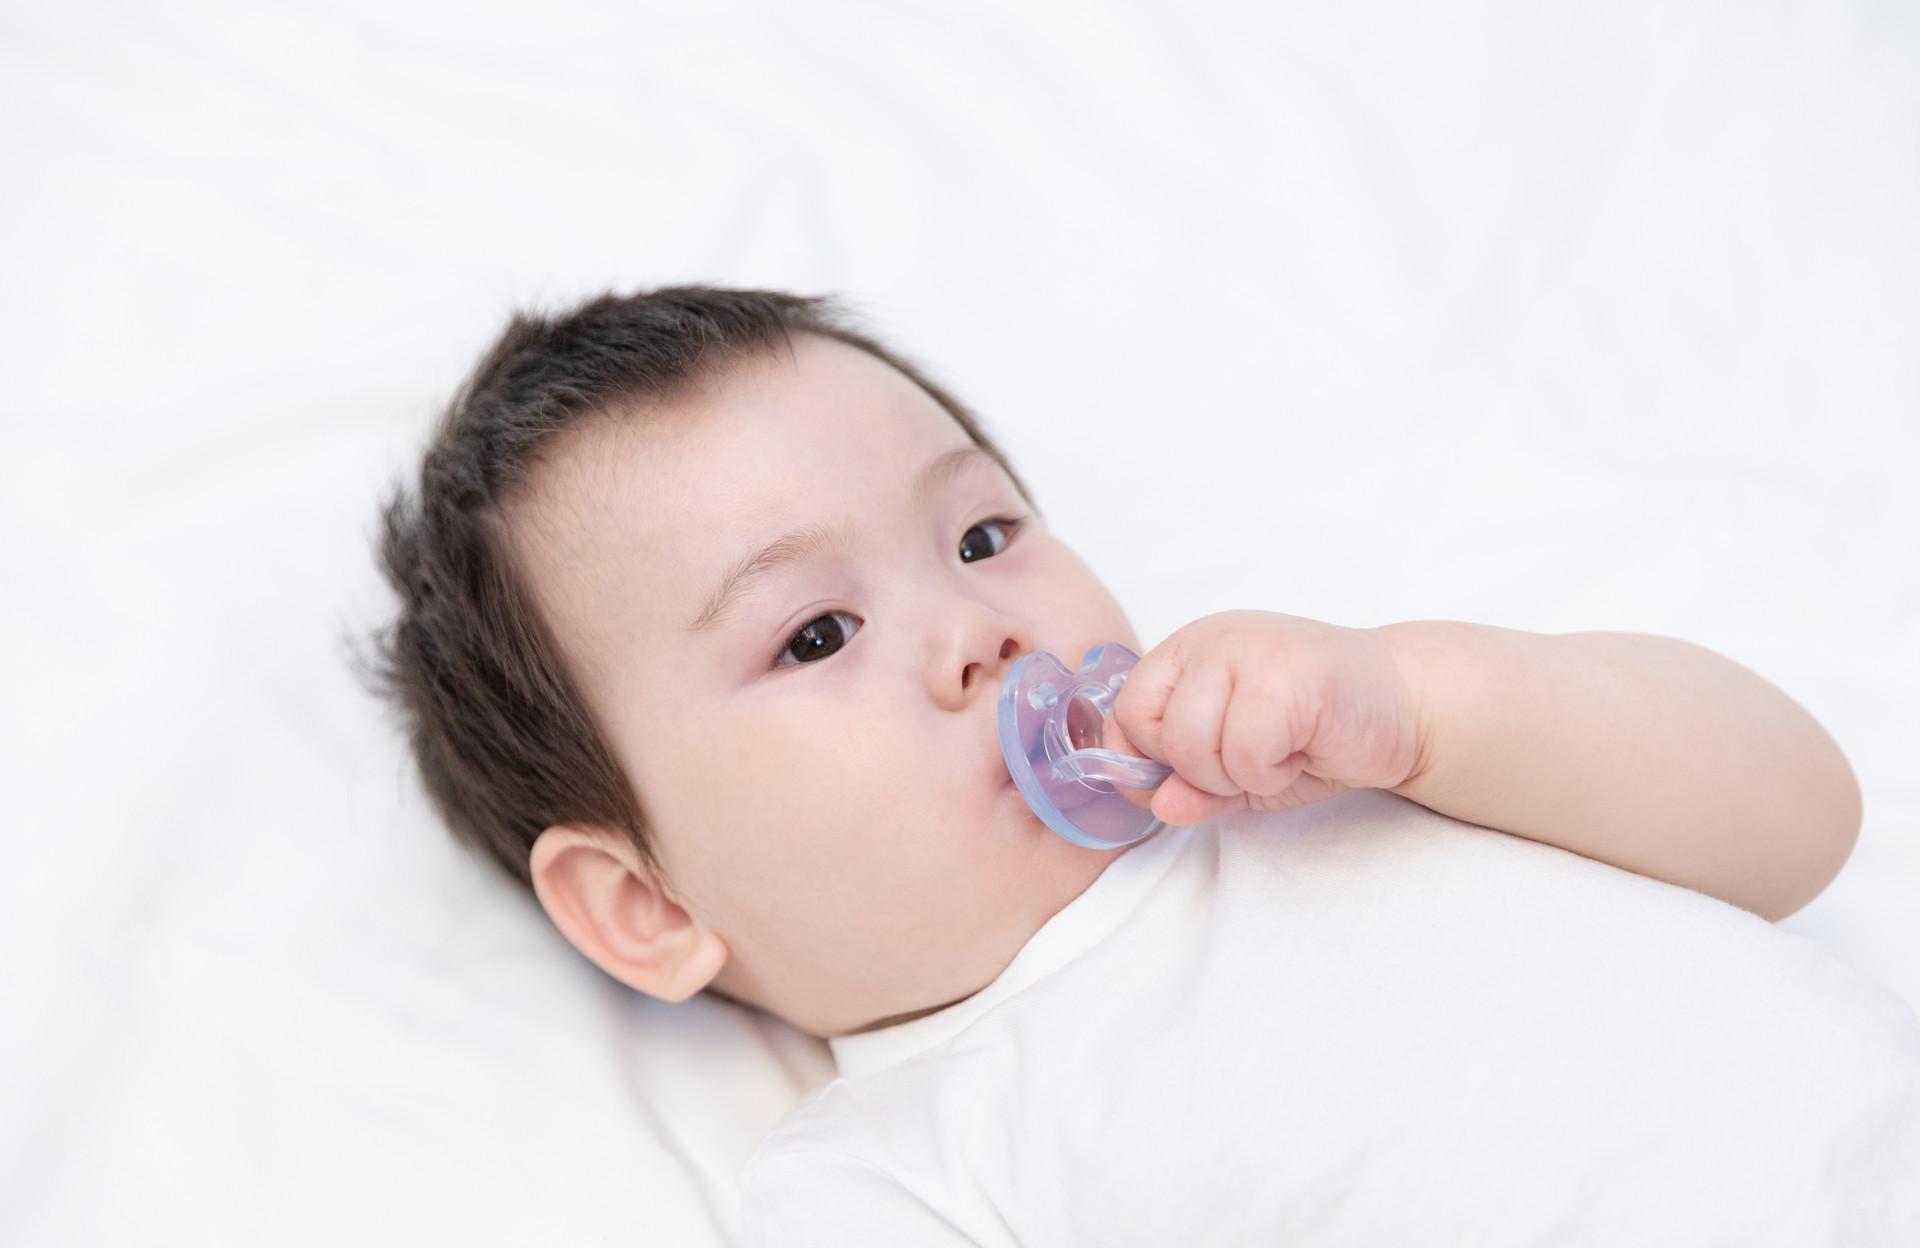 宝宝喘气粗是什么原因导致的